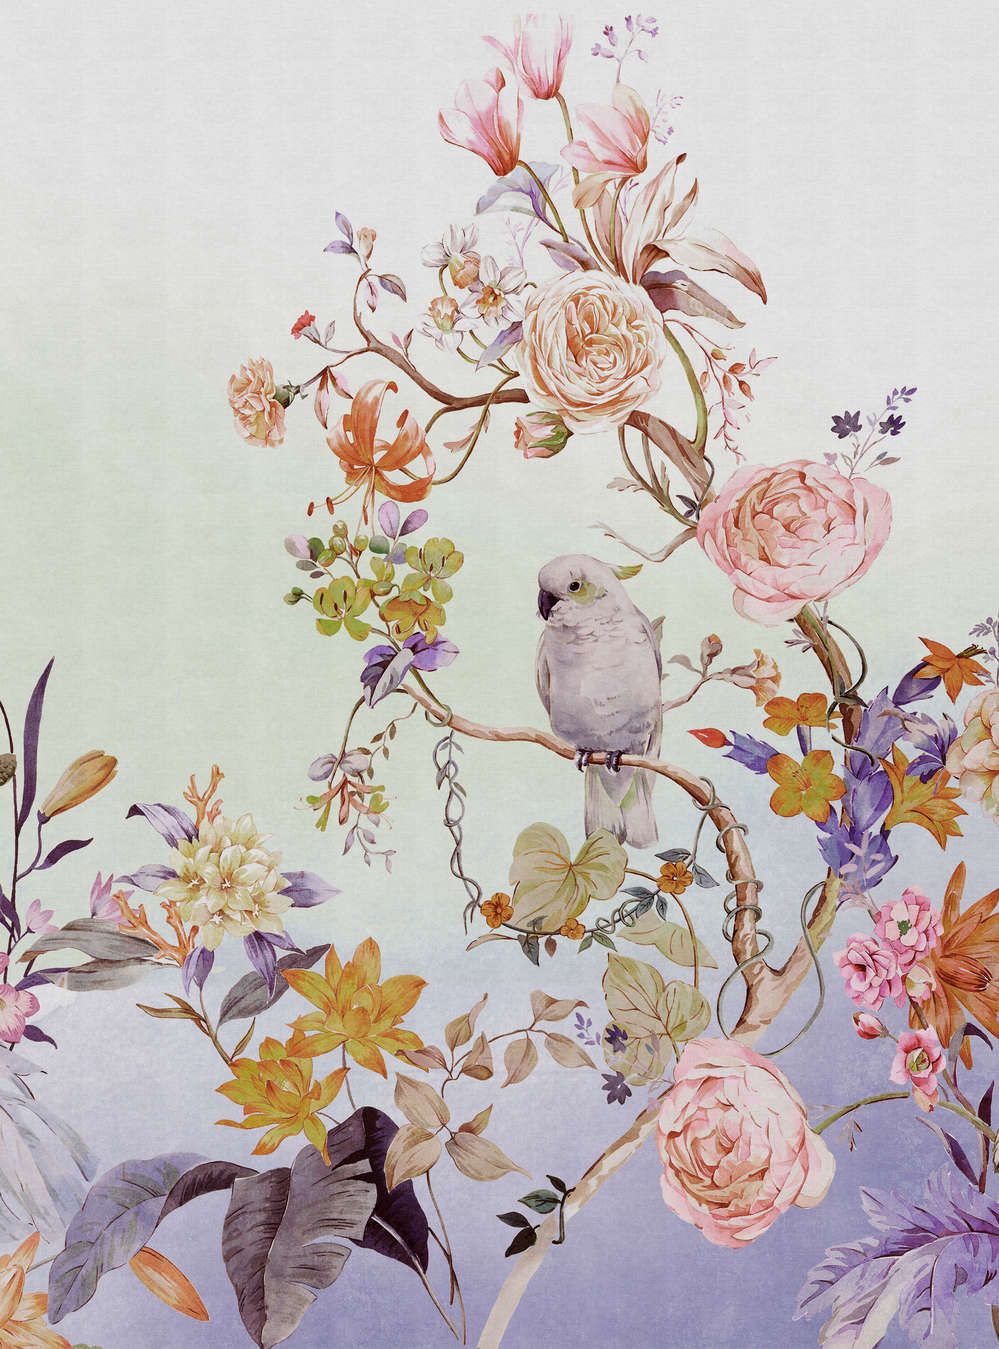             Fotomural »paradise« - Pájaro y flores con degradado de colores y textura de lino en el fondo - Coloreado | Tela no tejida de textura ligera
        